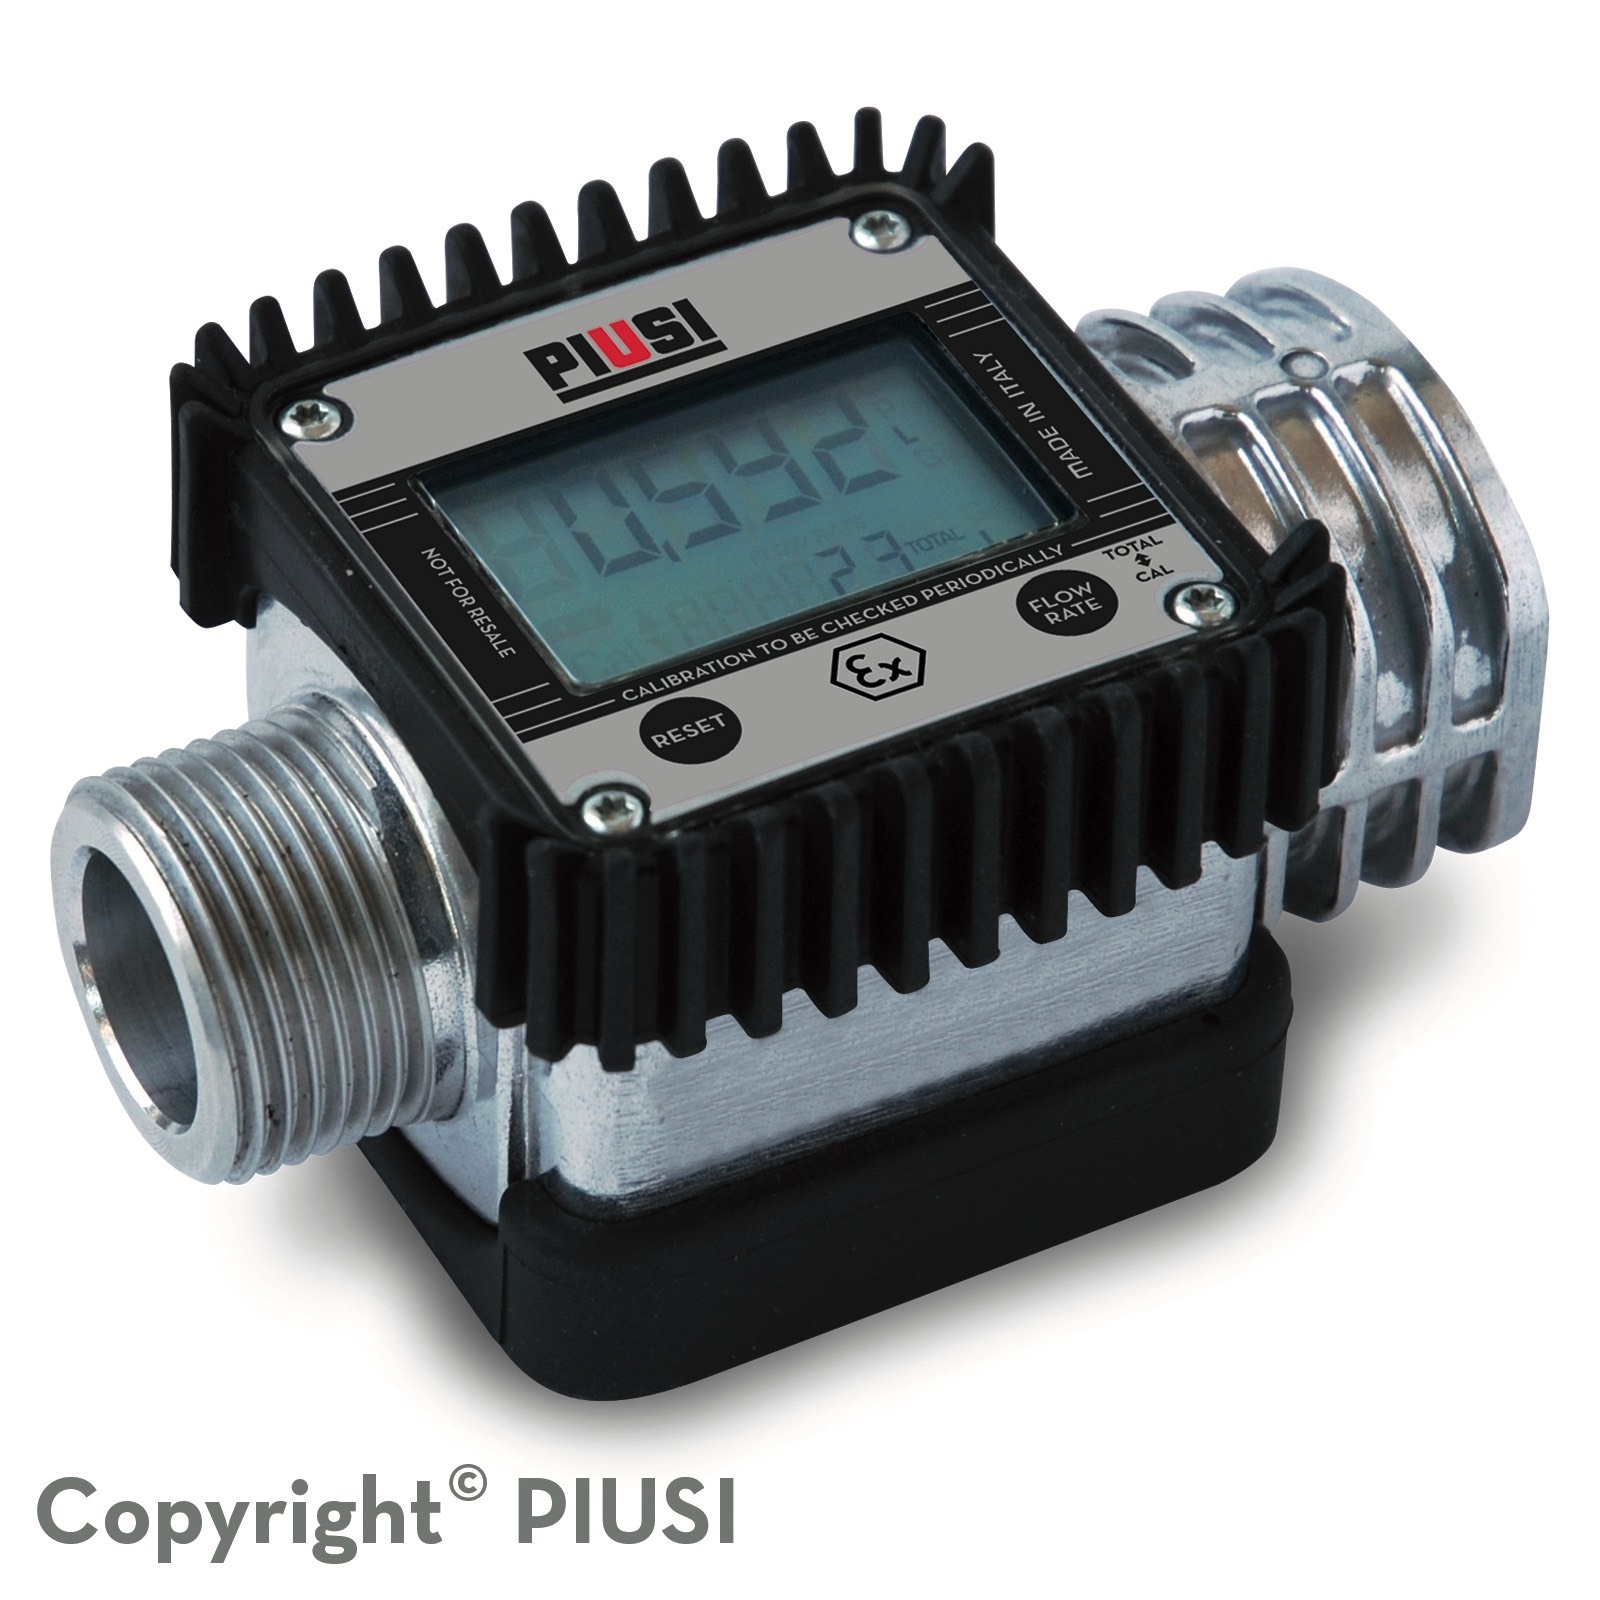 Đồng hồ đo lưu lượng xăng dầu Piusi K24 Atex